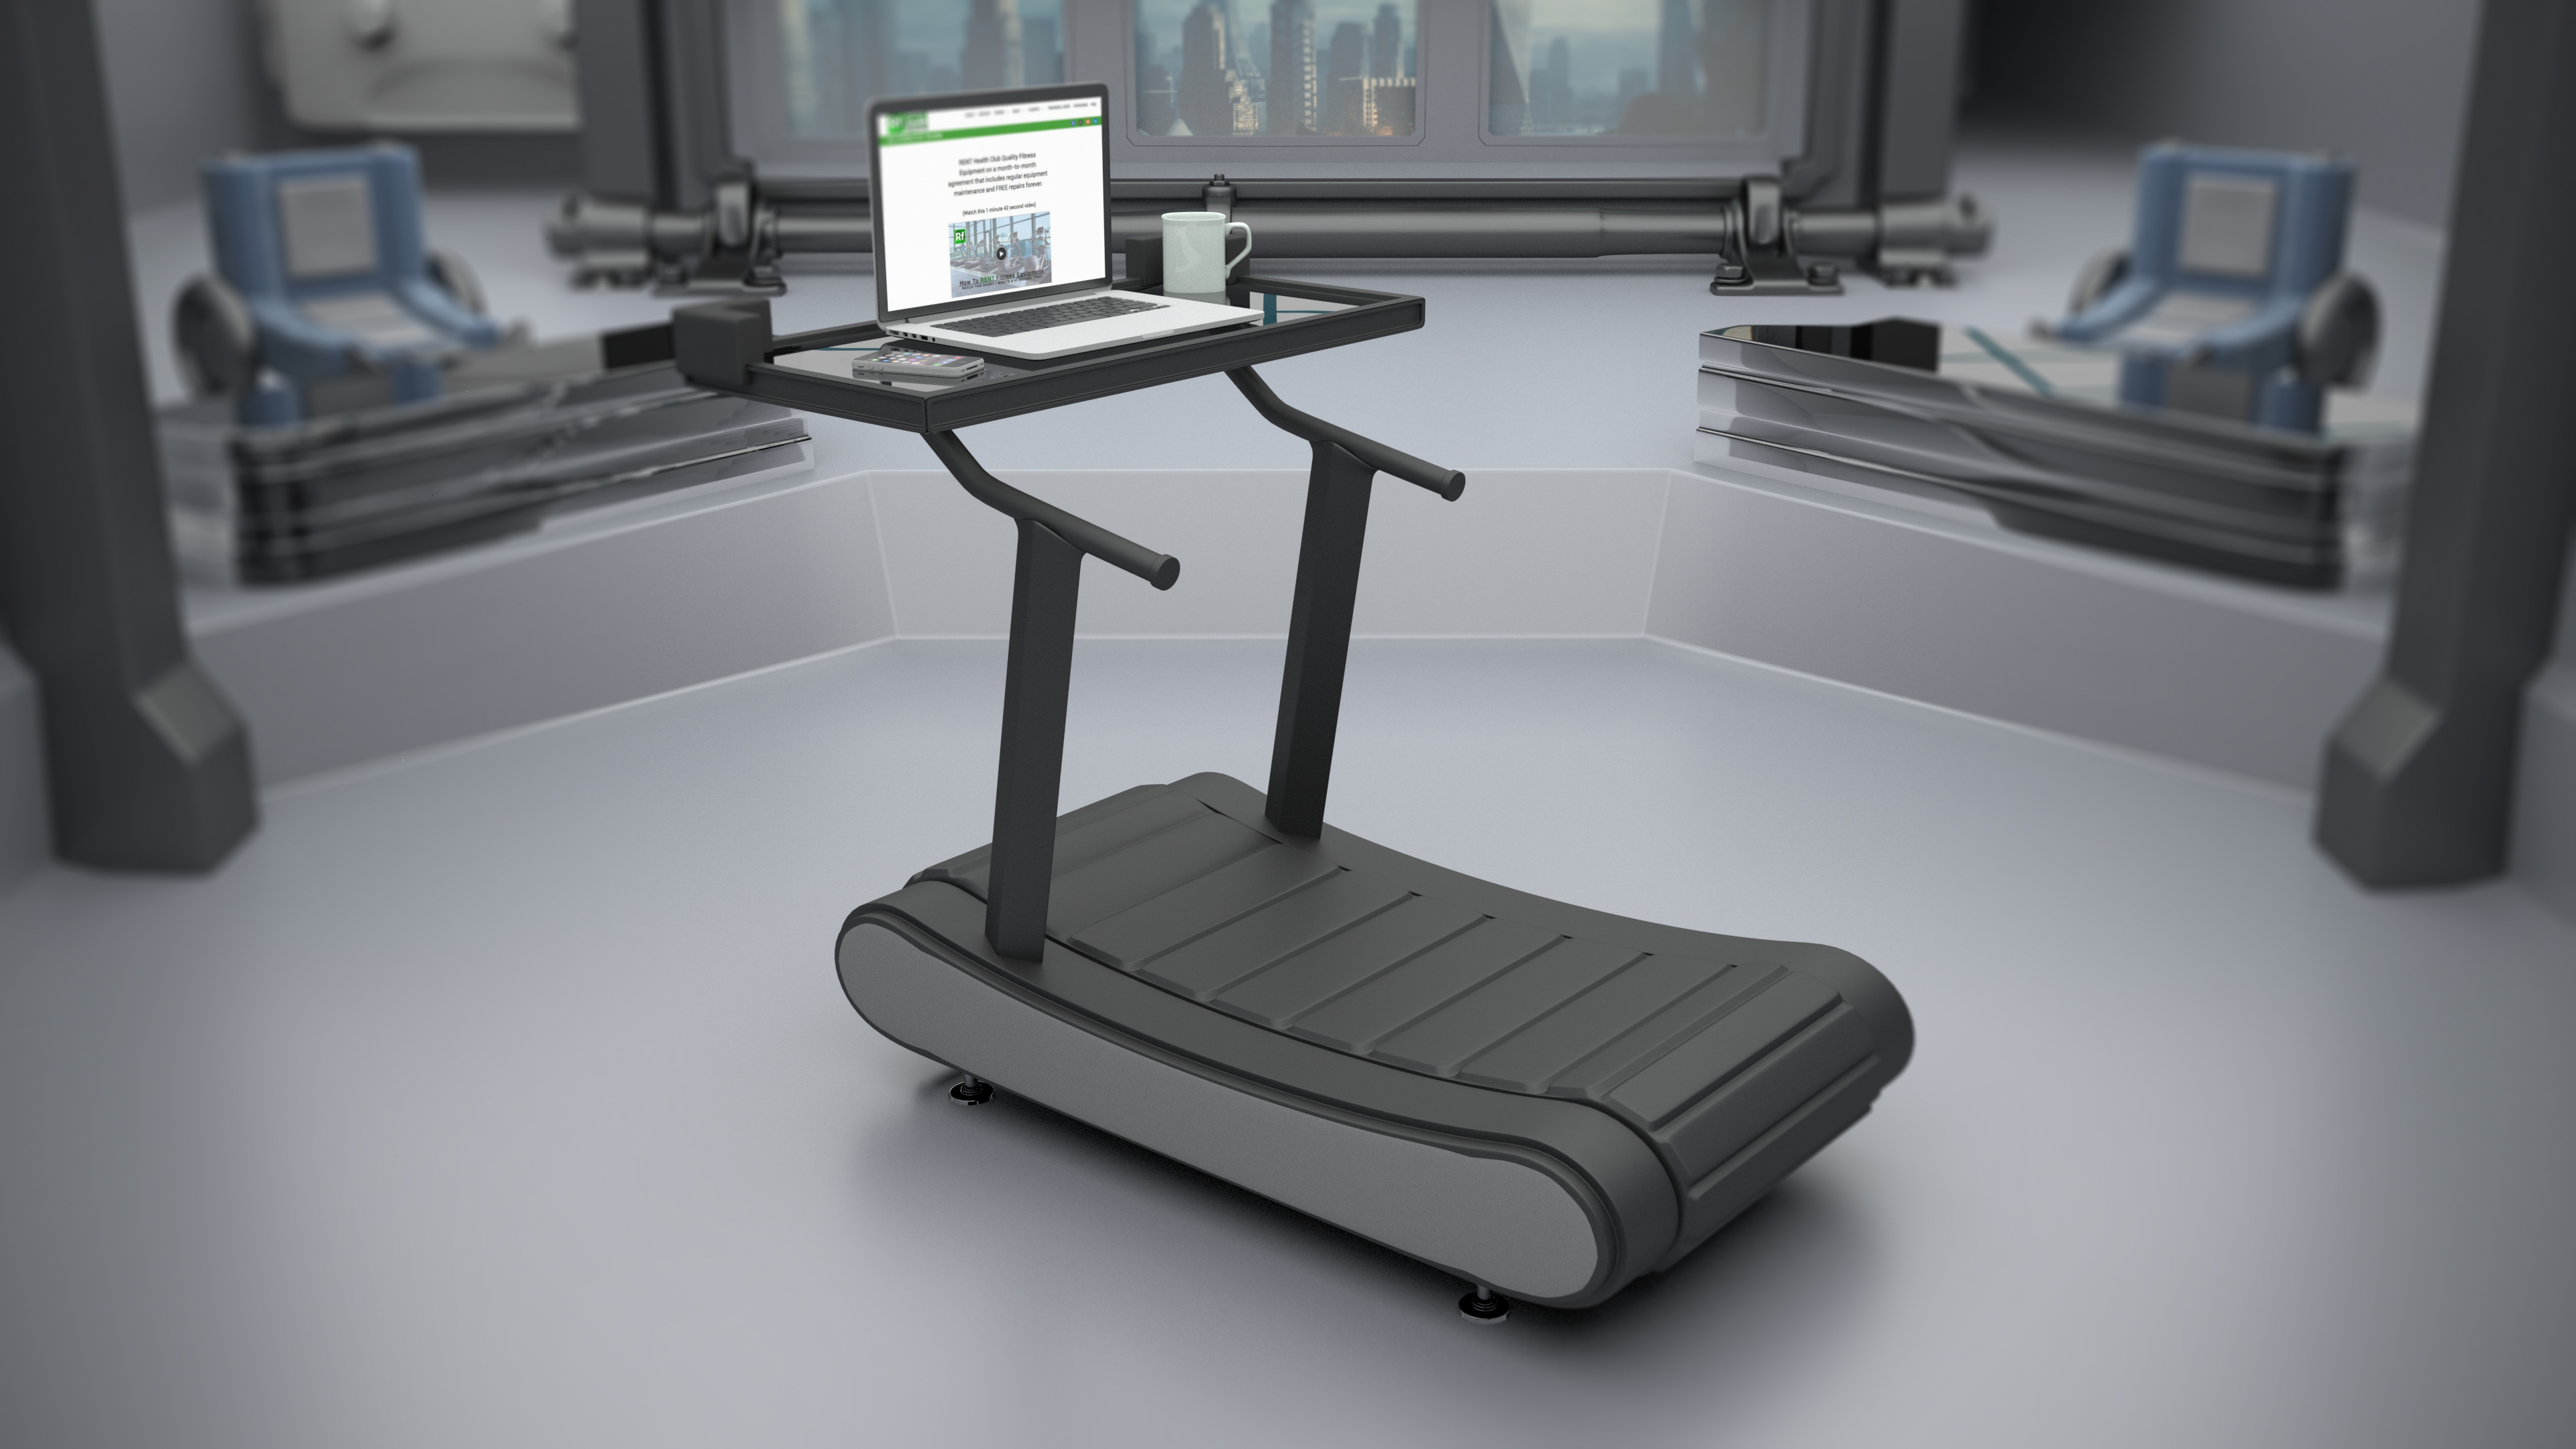 2017 treadmill desk